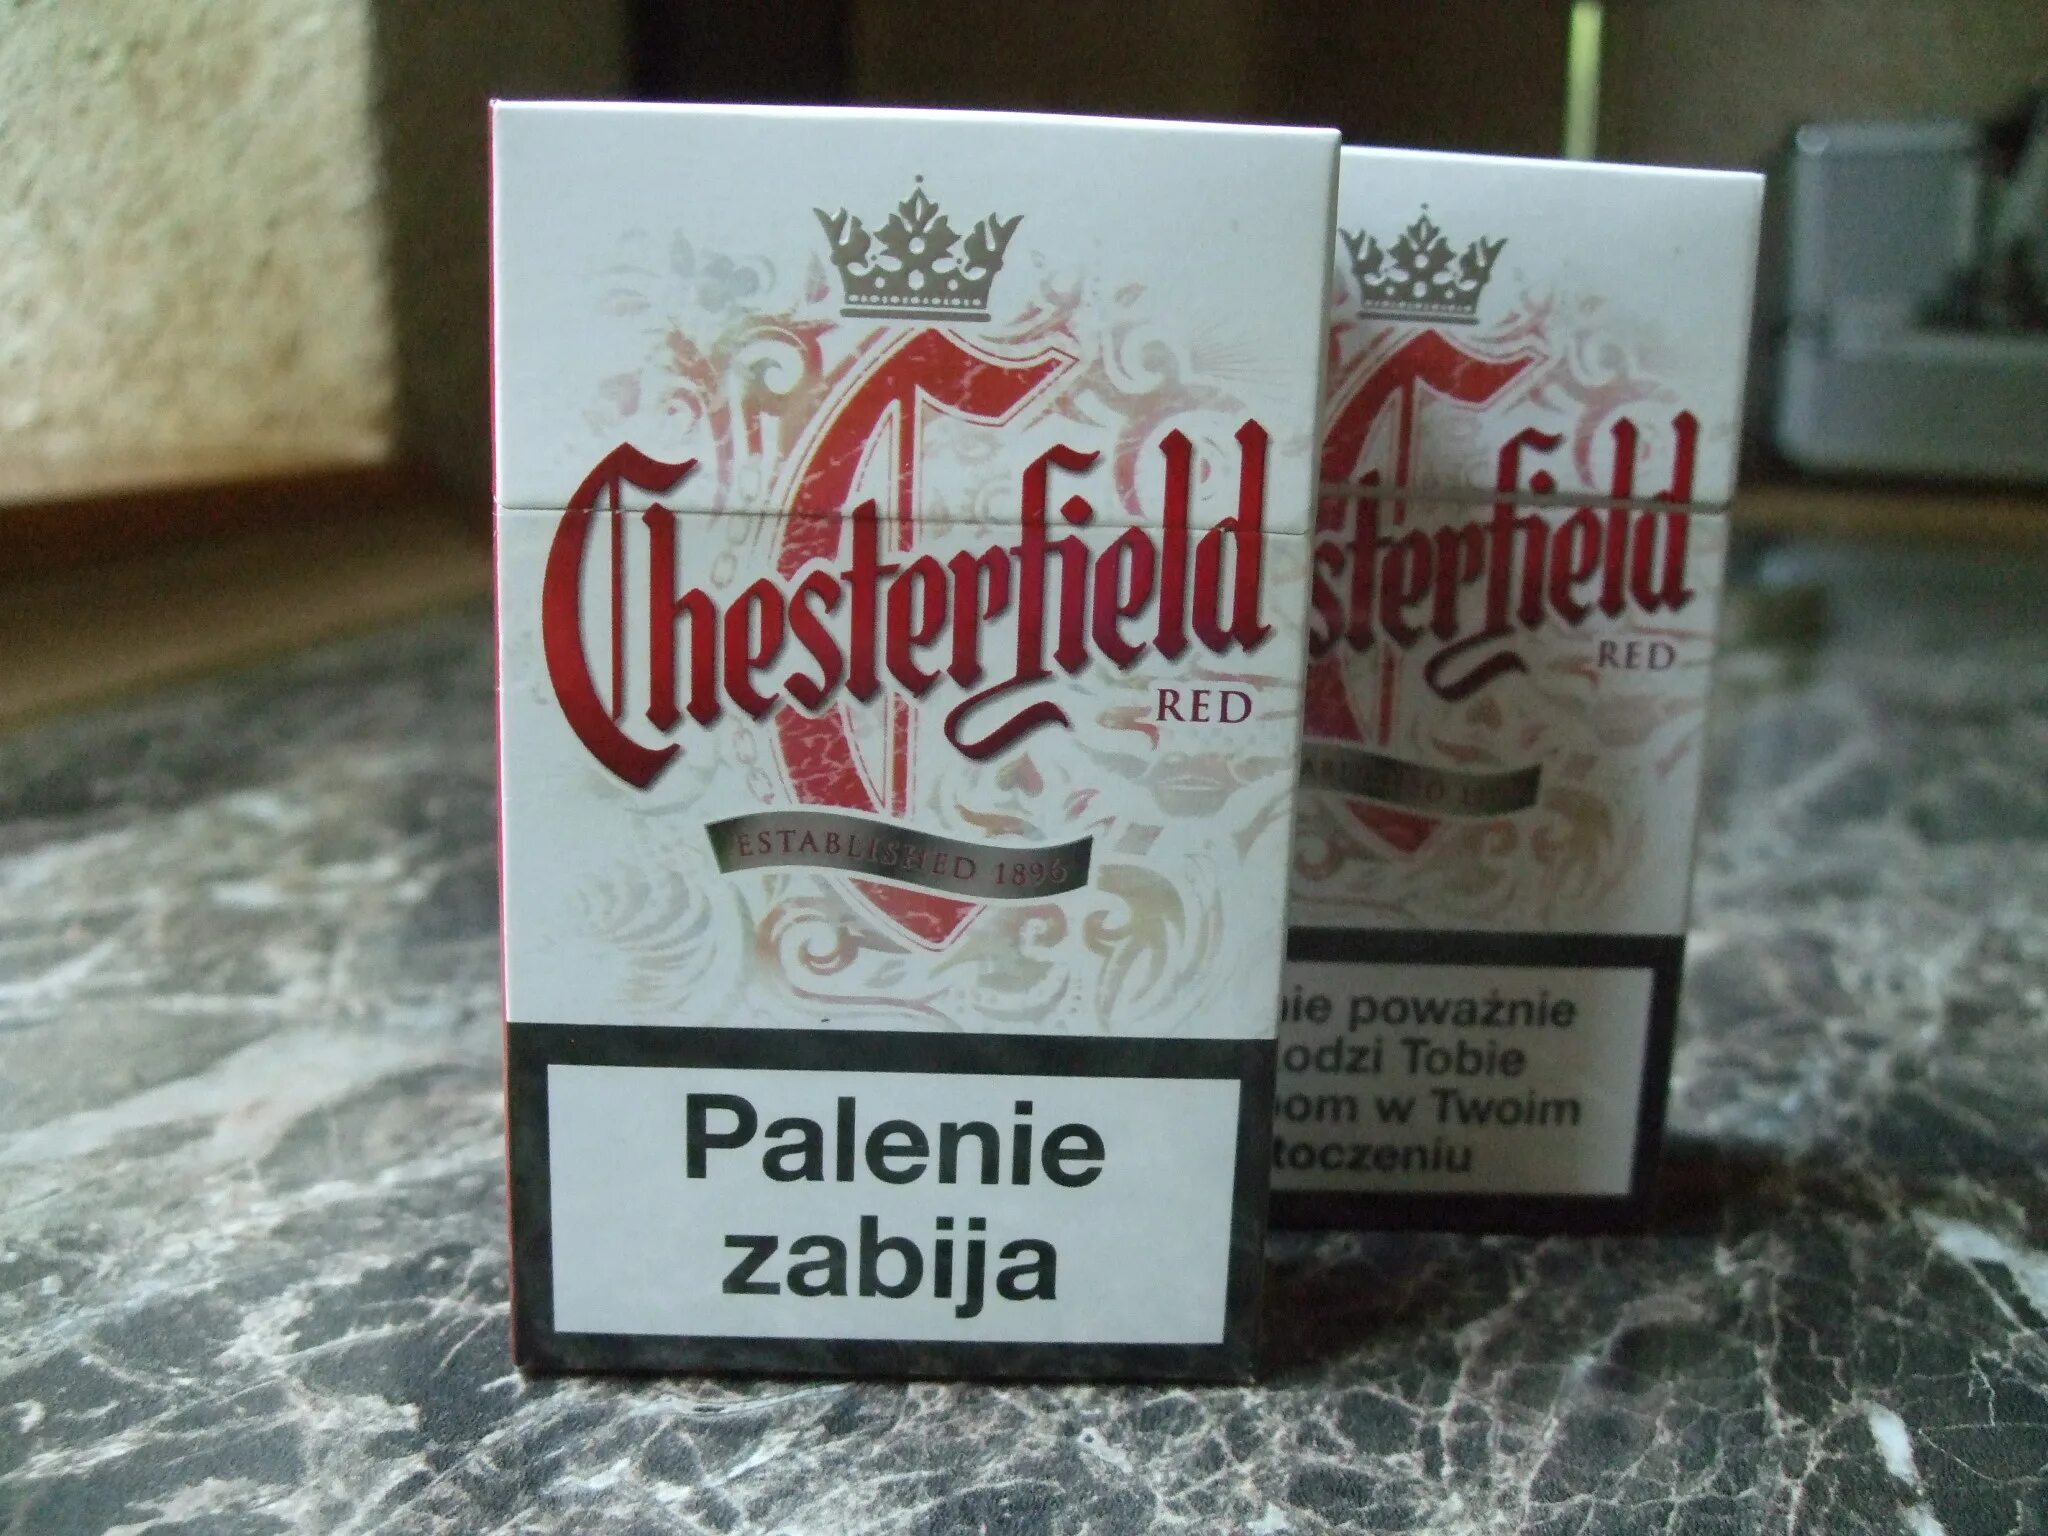 Честерфилд компакт цена. Сигареты Честерфилд компакт. Сигареты Честер компакт красный. Сигареты Честер Честерфилд. Chesterfield Compact красный.